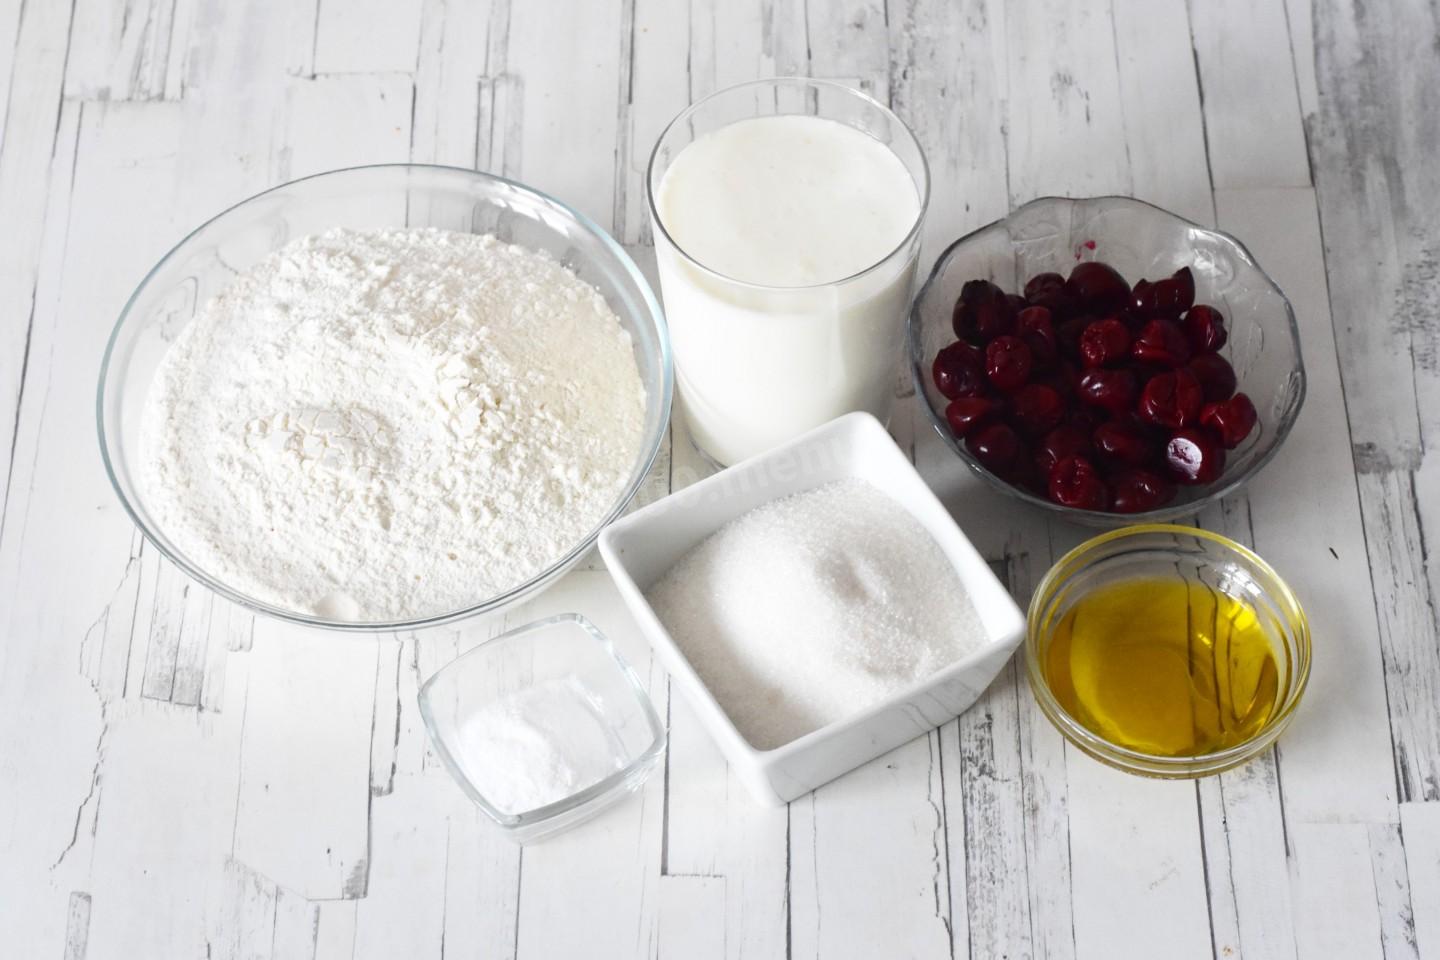 Кефир сахар мука рецепт. 1 Пачка творога 3 ложки кефира сахар сода и жарить на сковороде в масле.